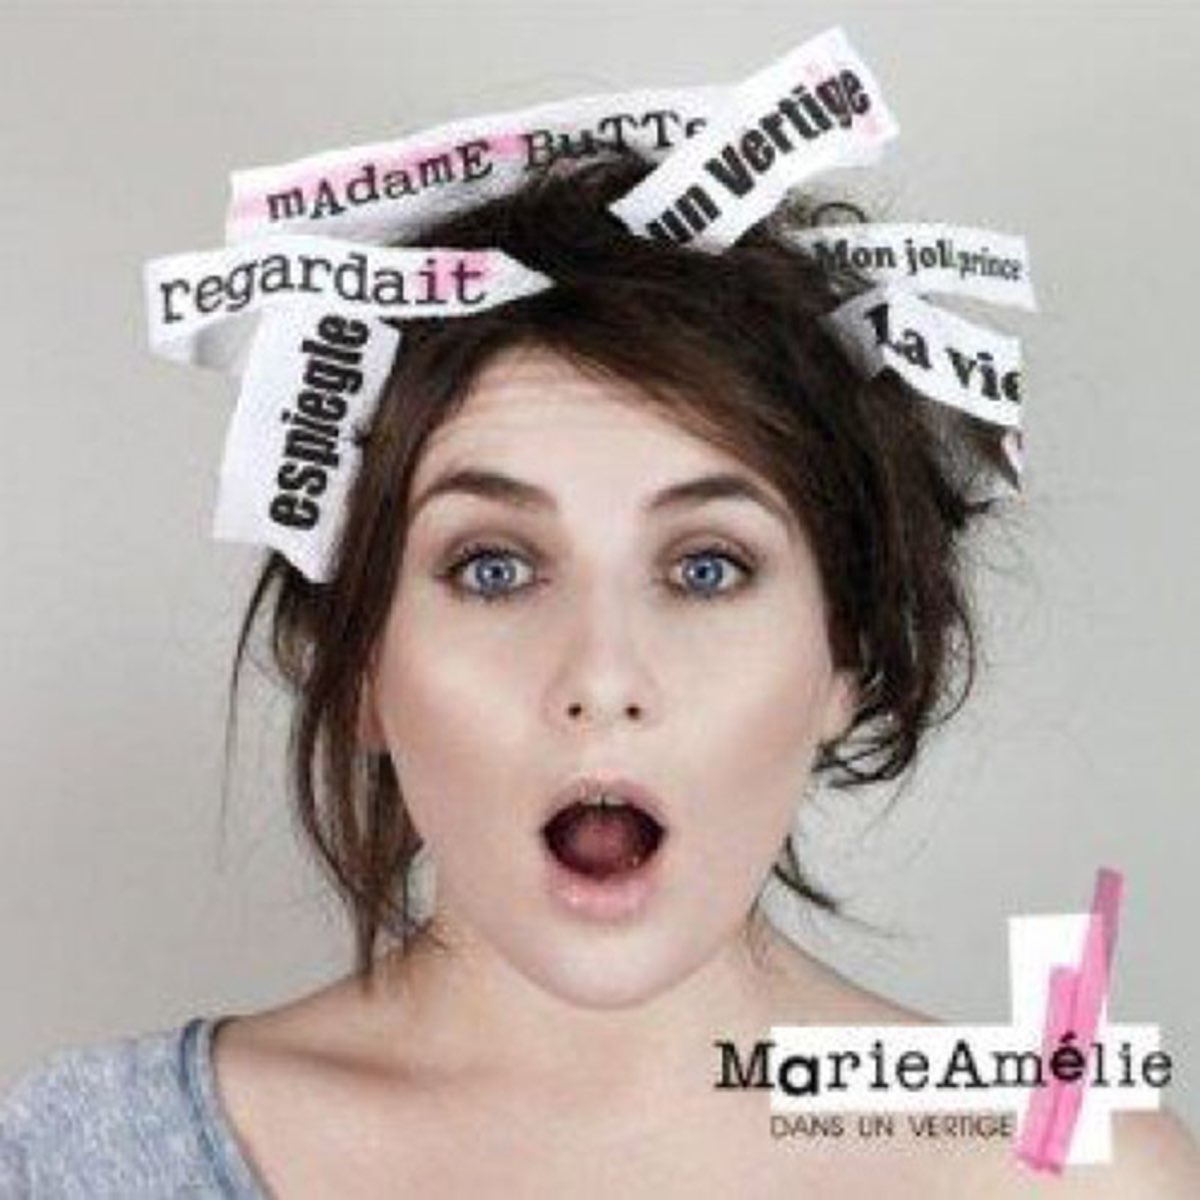 Marie mon. Marie Amelie. Mon Marie. Marie Amelie обложки дисков. Мари Алихари.